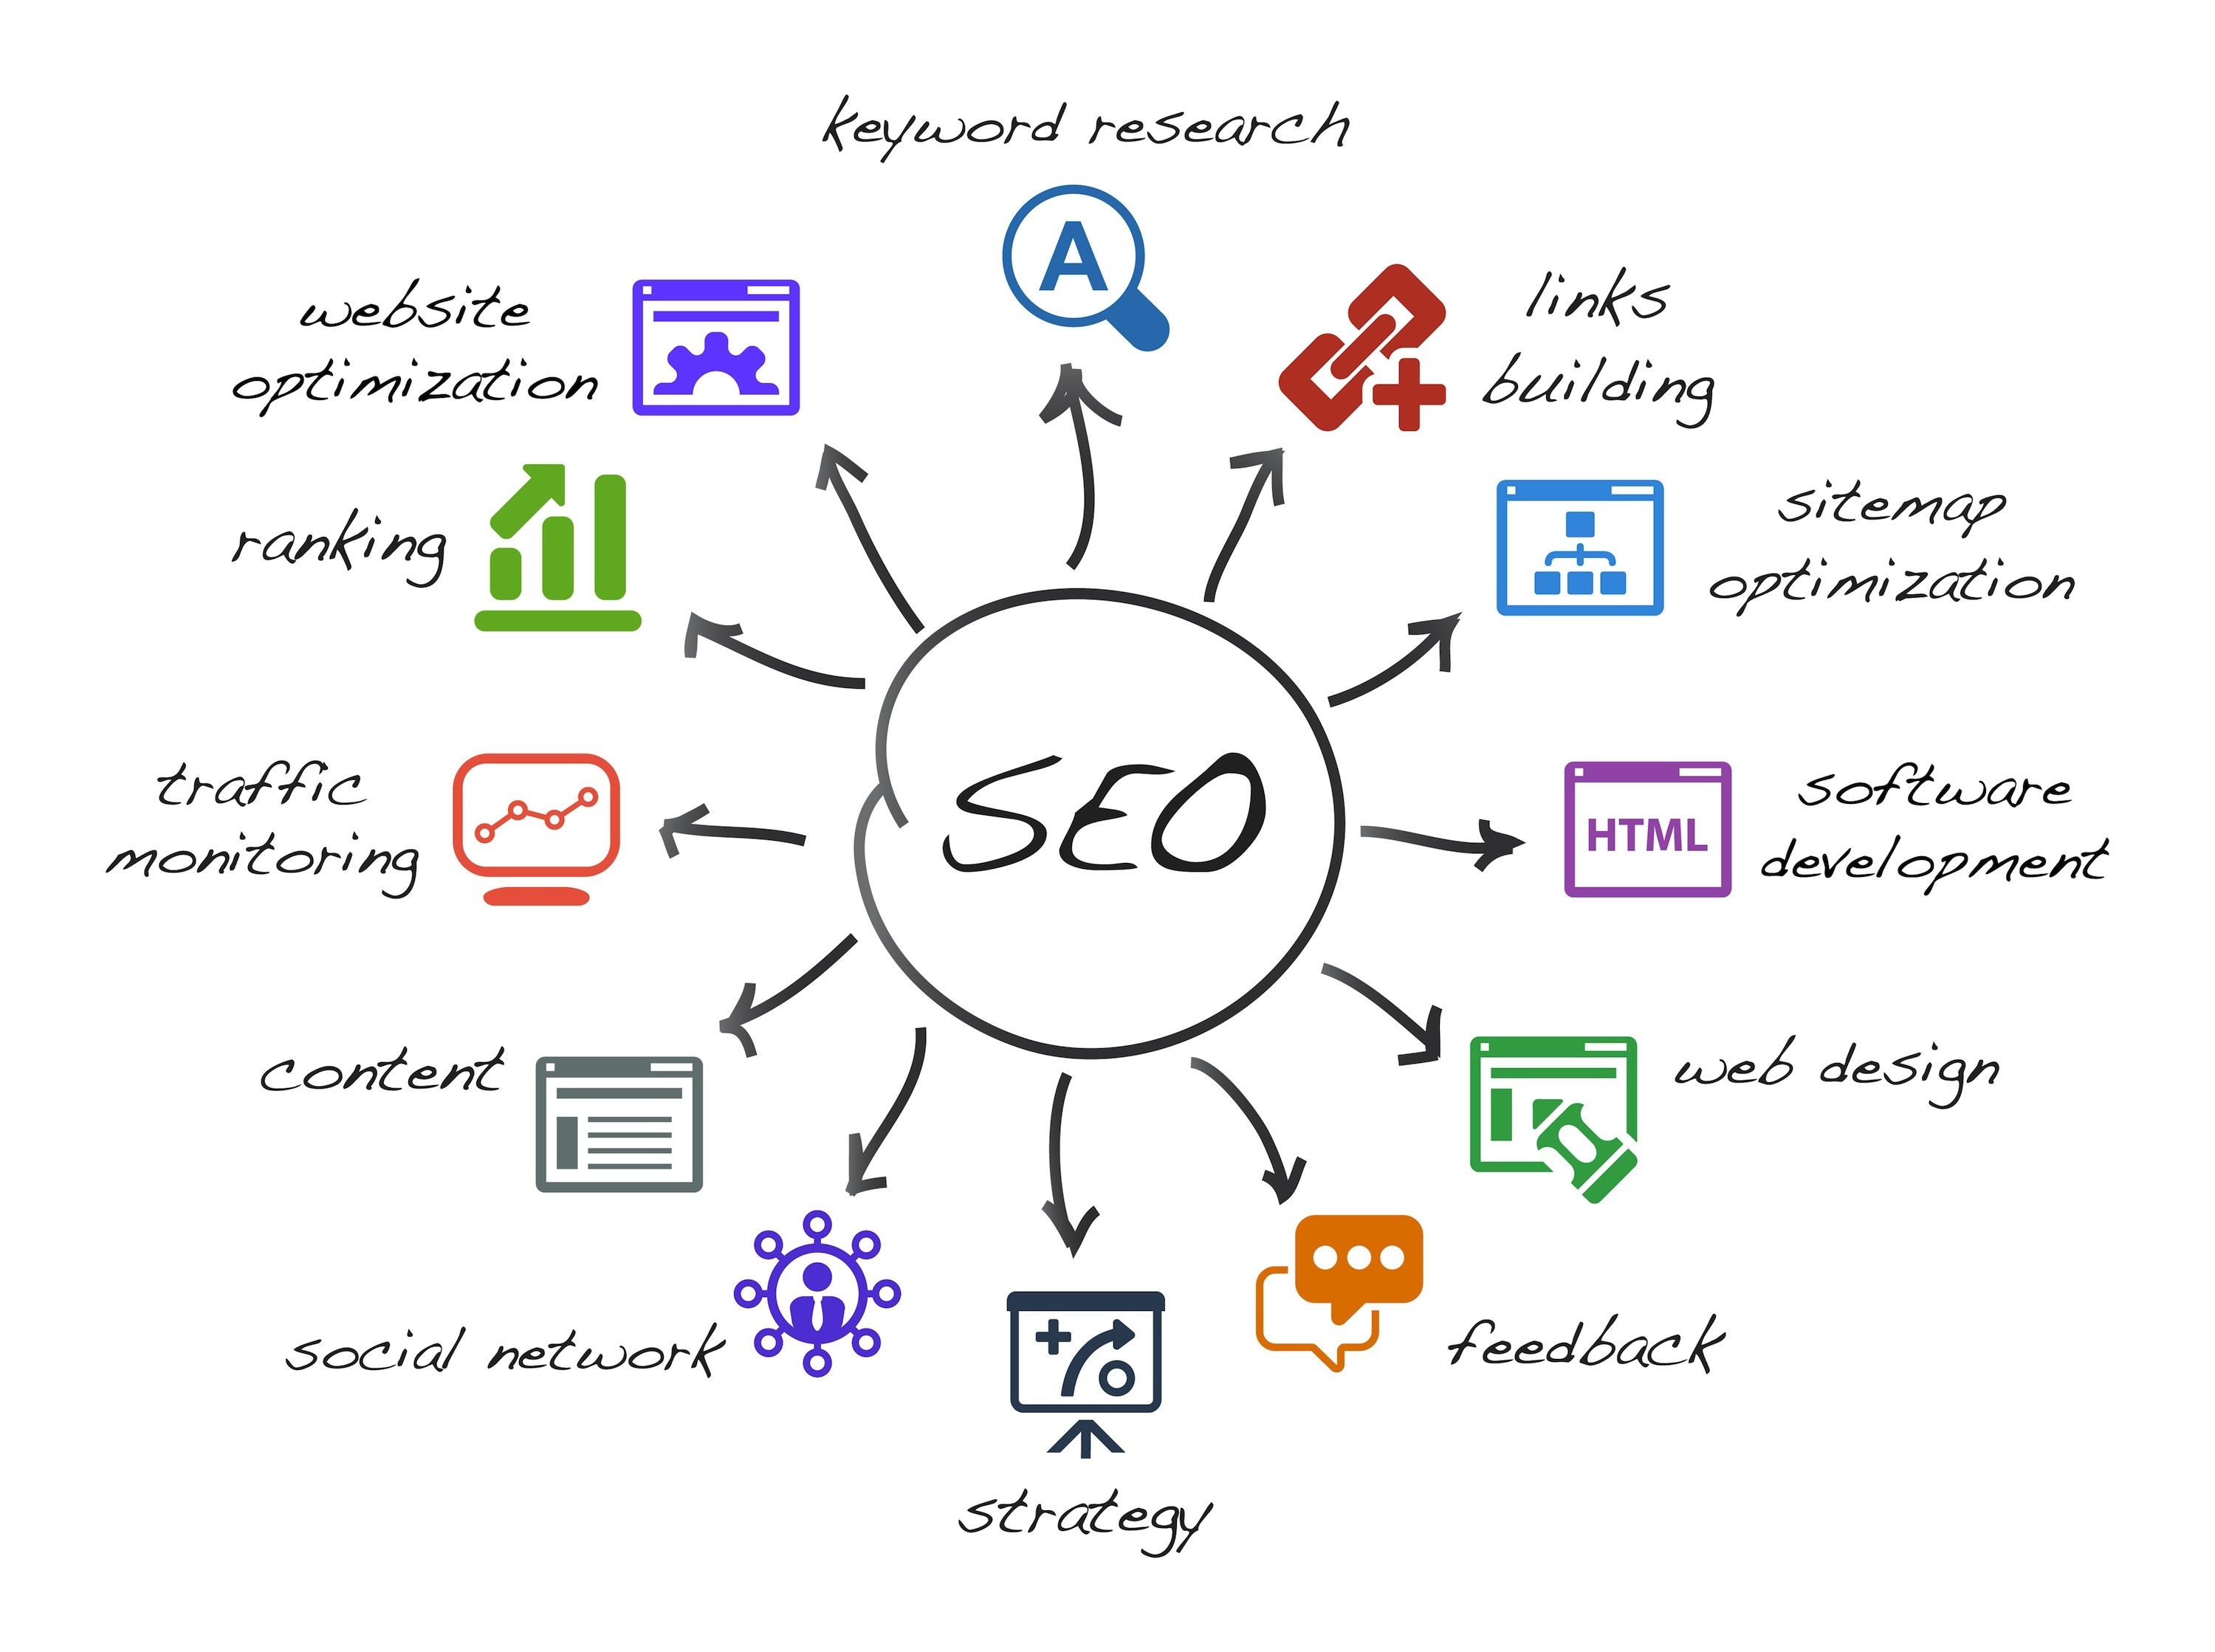 SEO или поисковая оптимизация - это процесс улучшения рейтинга сайта в поисковых системах, таких как Google